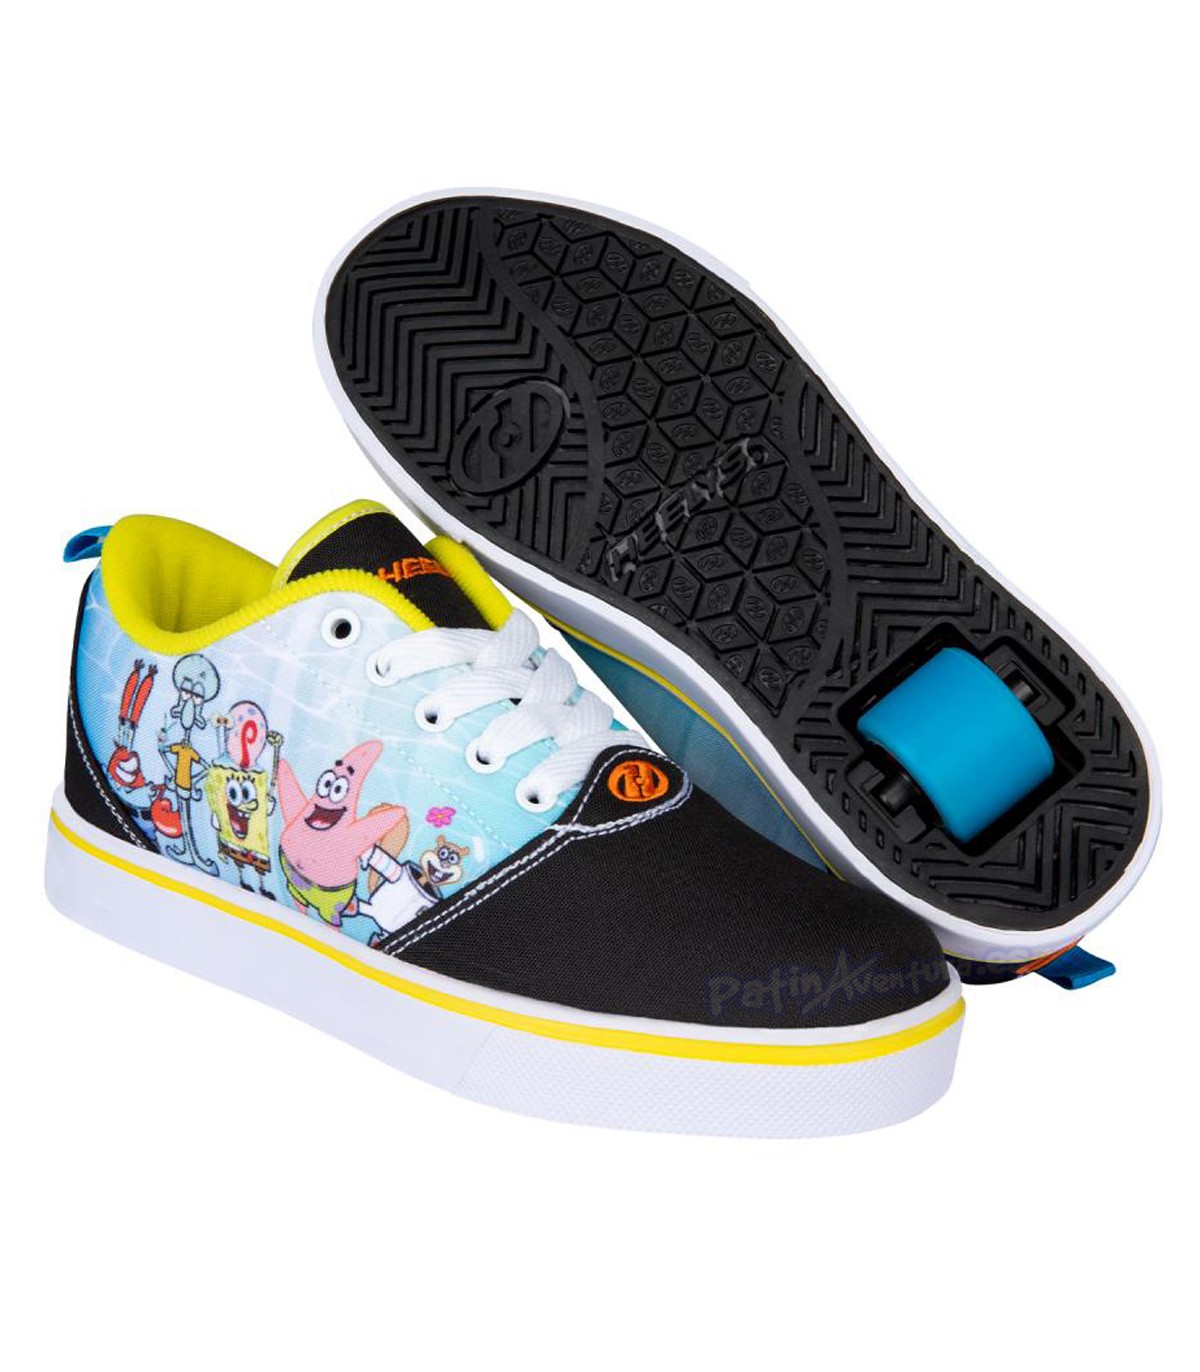 Zapatillas con ruedas Heelys Bob Esponja para niños/as